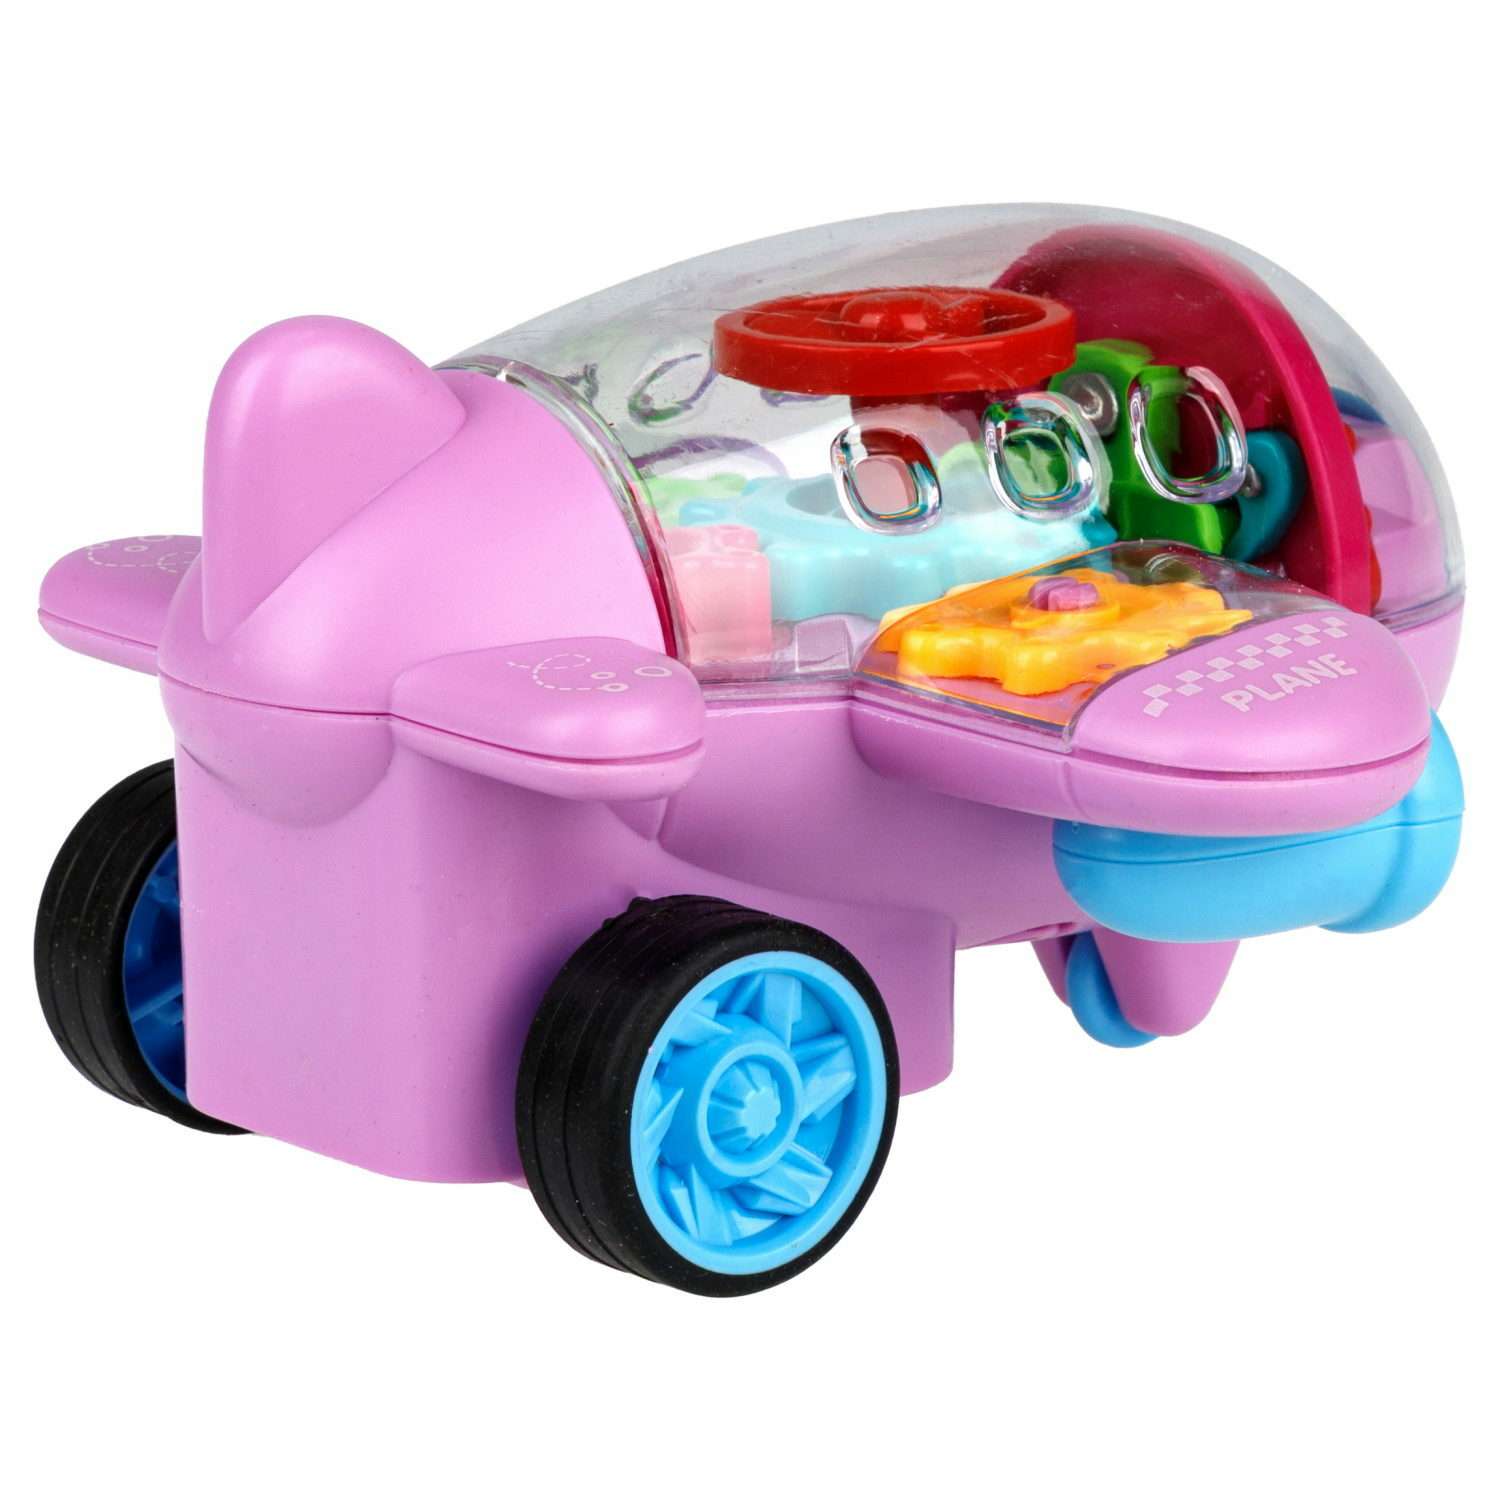 Самолет игрушка для детей 1TOY Движок розовый прозрачный с шестеренками светящийся на батарейках - фото 2